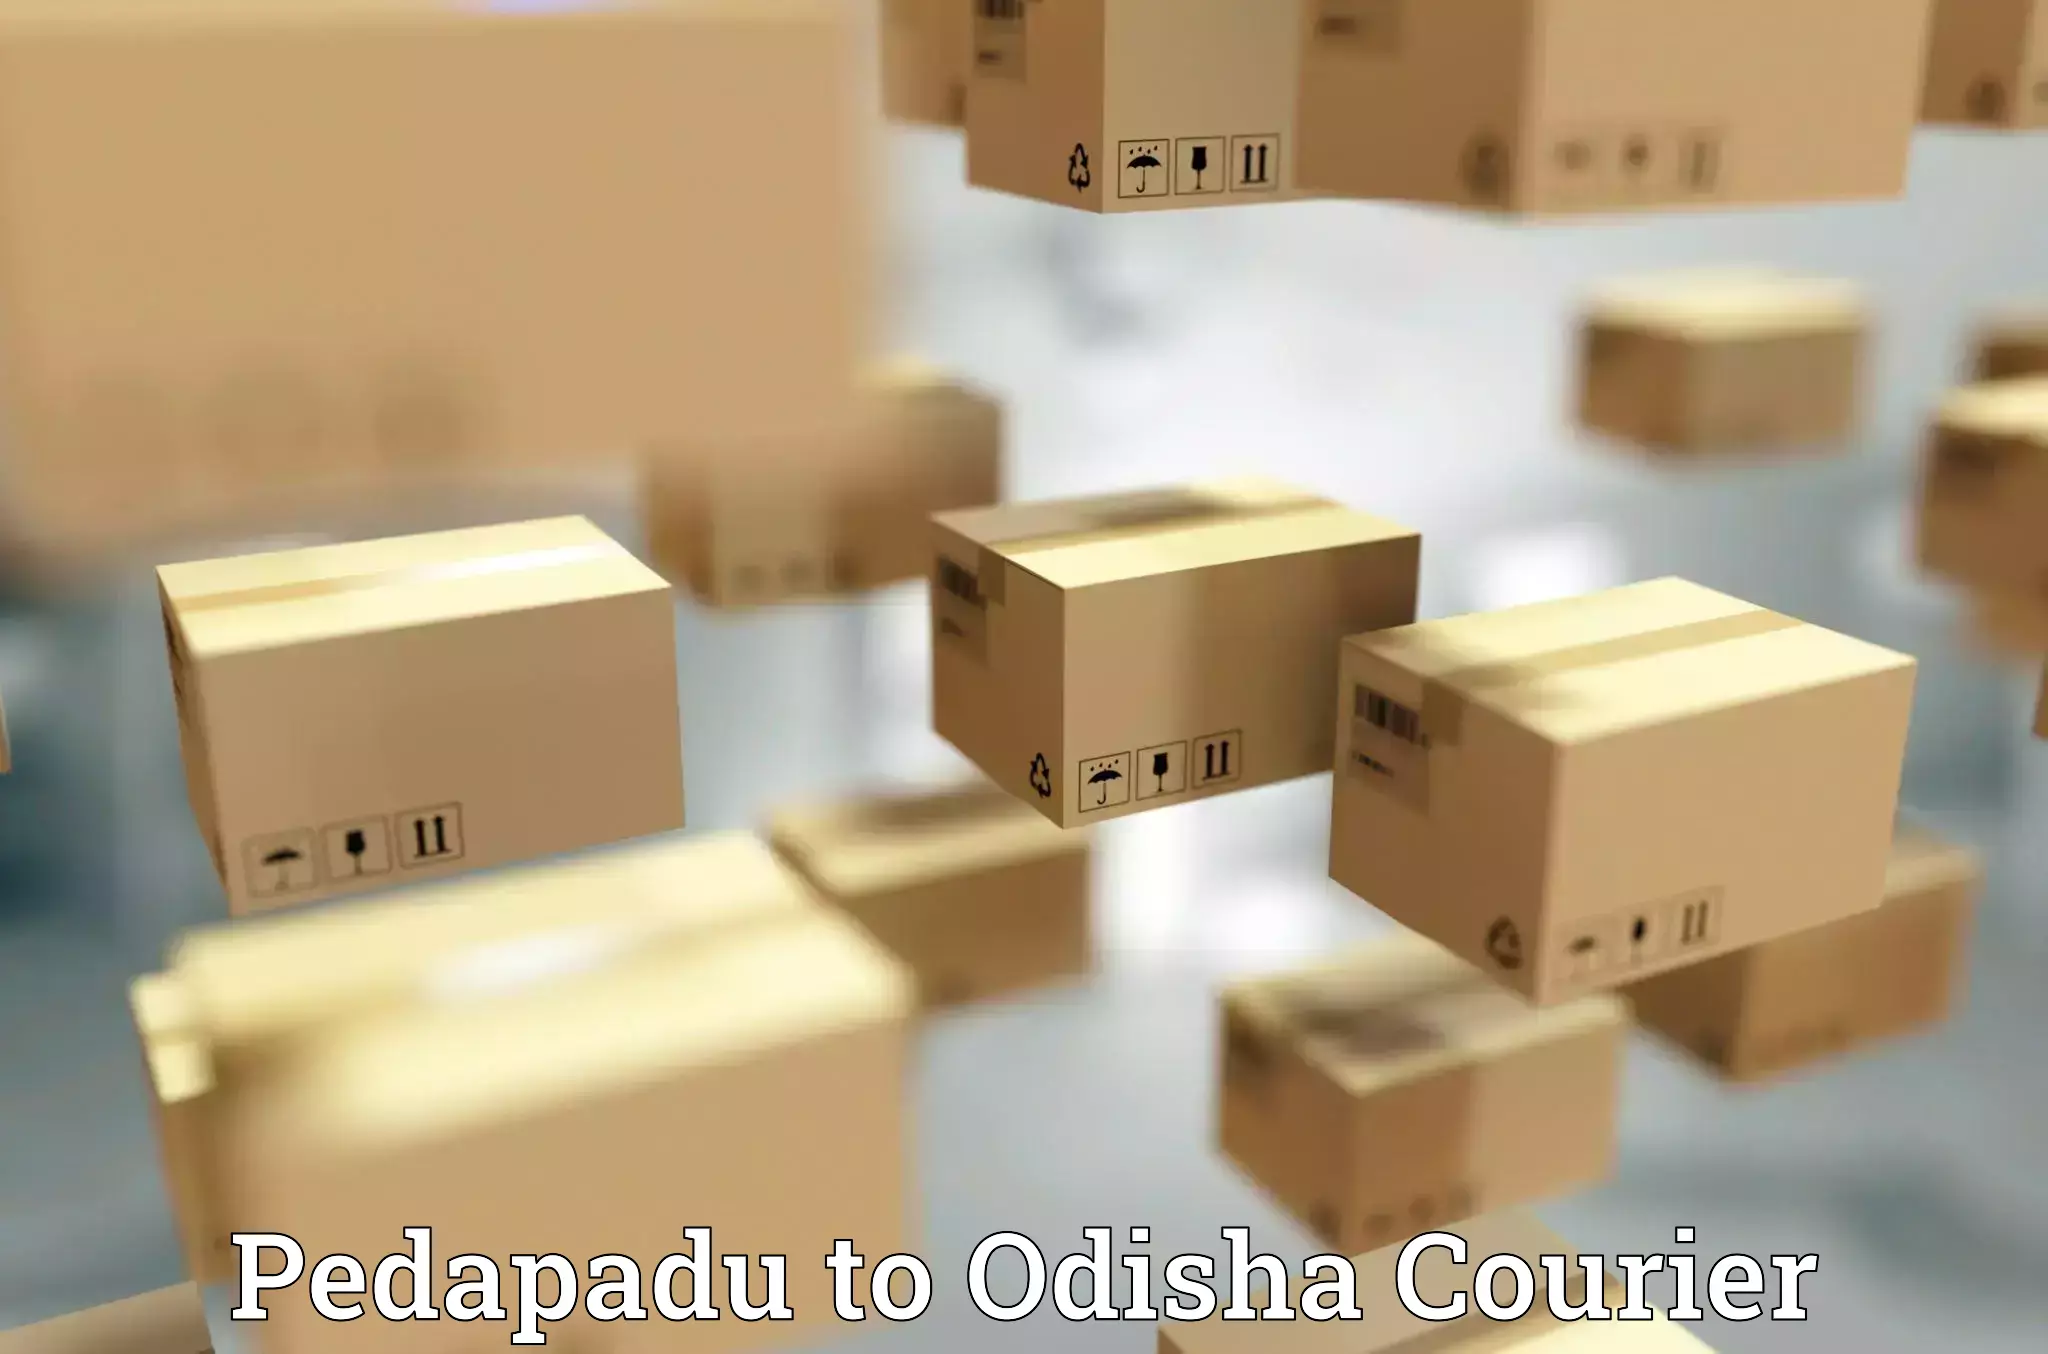 Full-service courier options Pedapadu to Basta